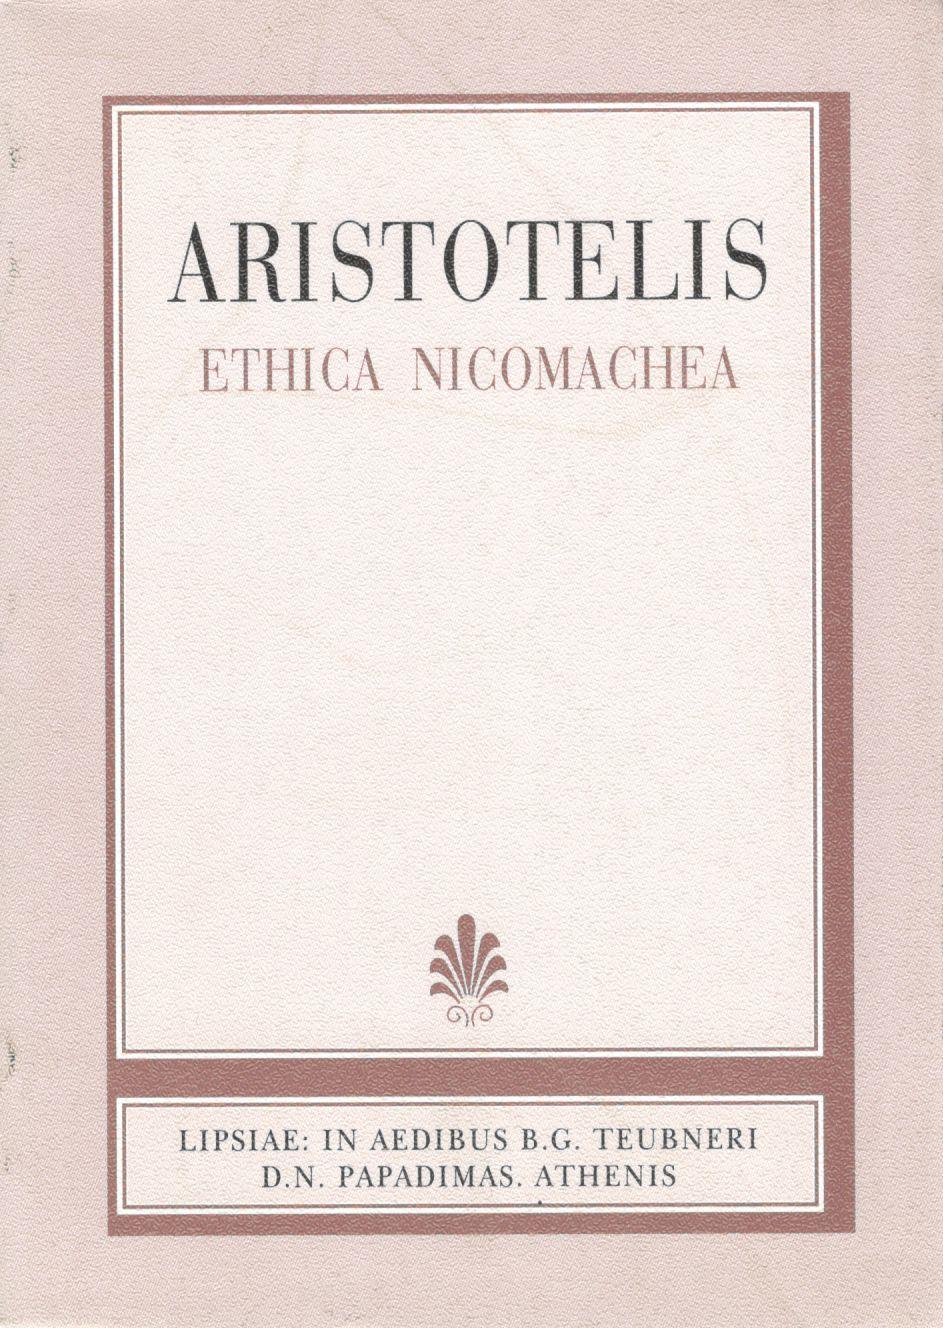 ARISTOTELIS, ETHICA NICOMACHEA (ΑΡΙΣΤΟΤΕΛΟΥΣ, ΗΘΙΚΑ ΝΙΚΟΜΑΧΕΙΑ)